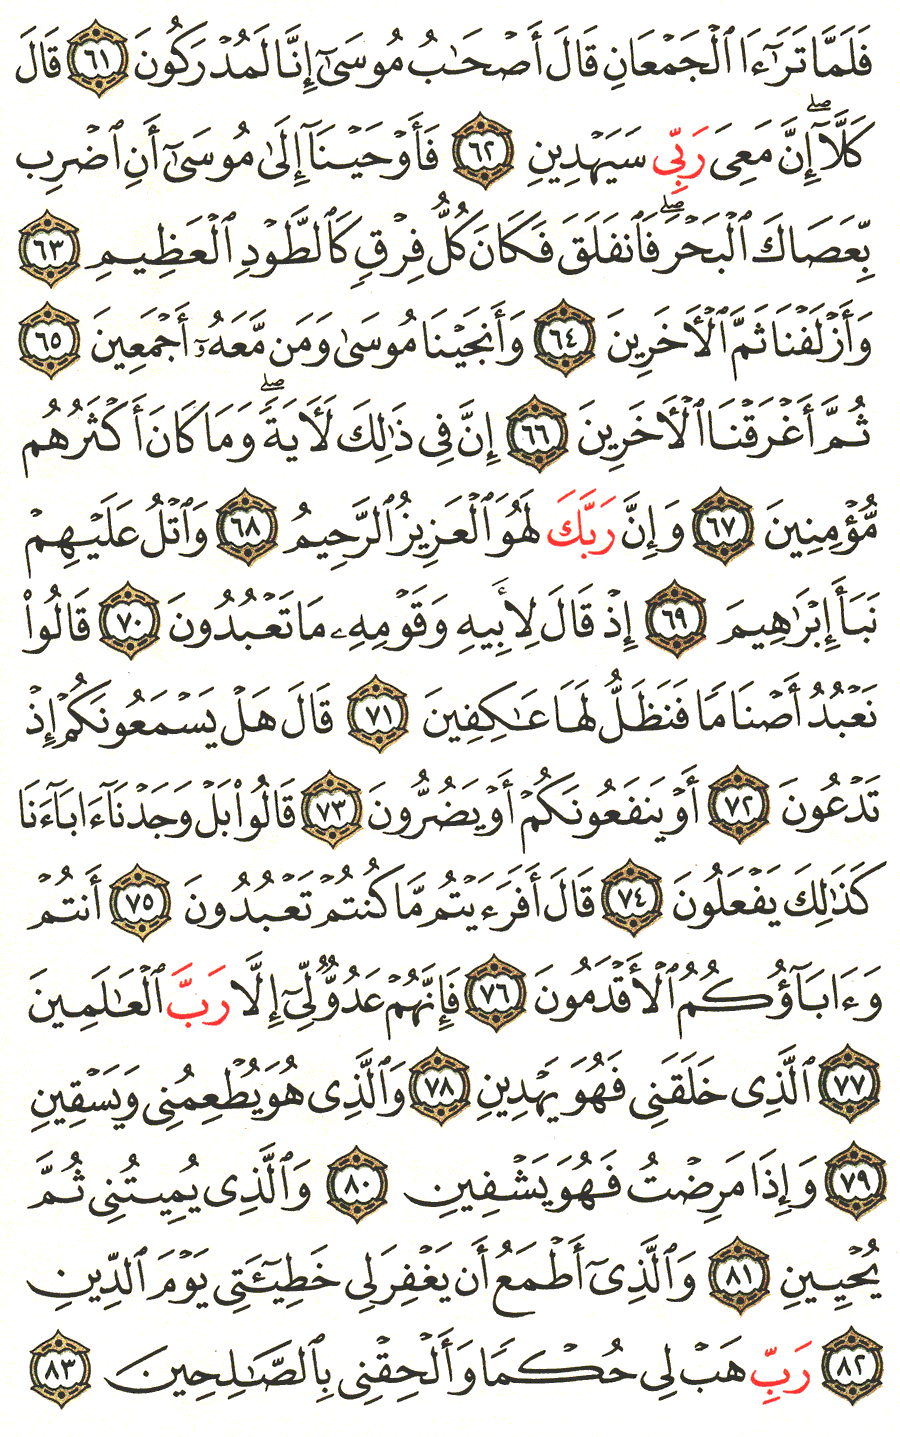 الصفحة 370 من القرآن الكريم